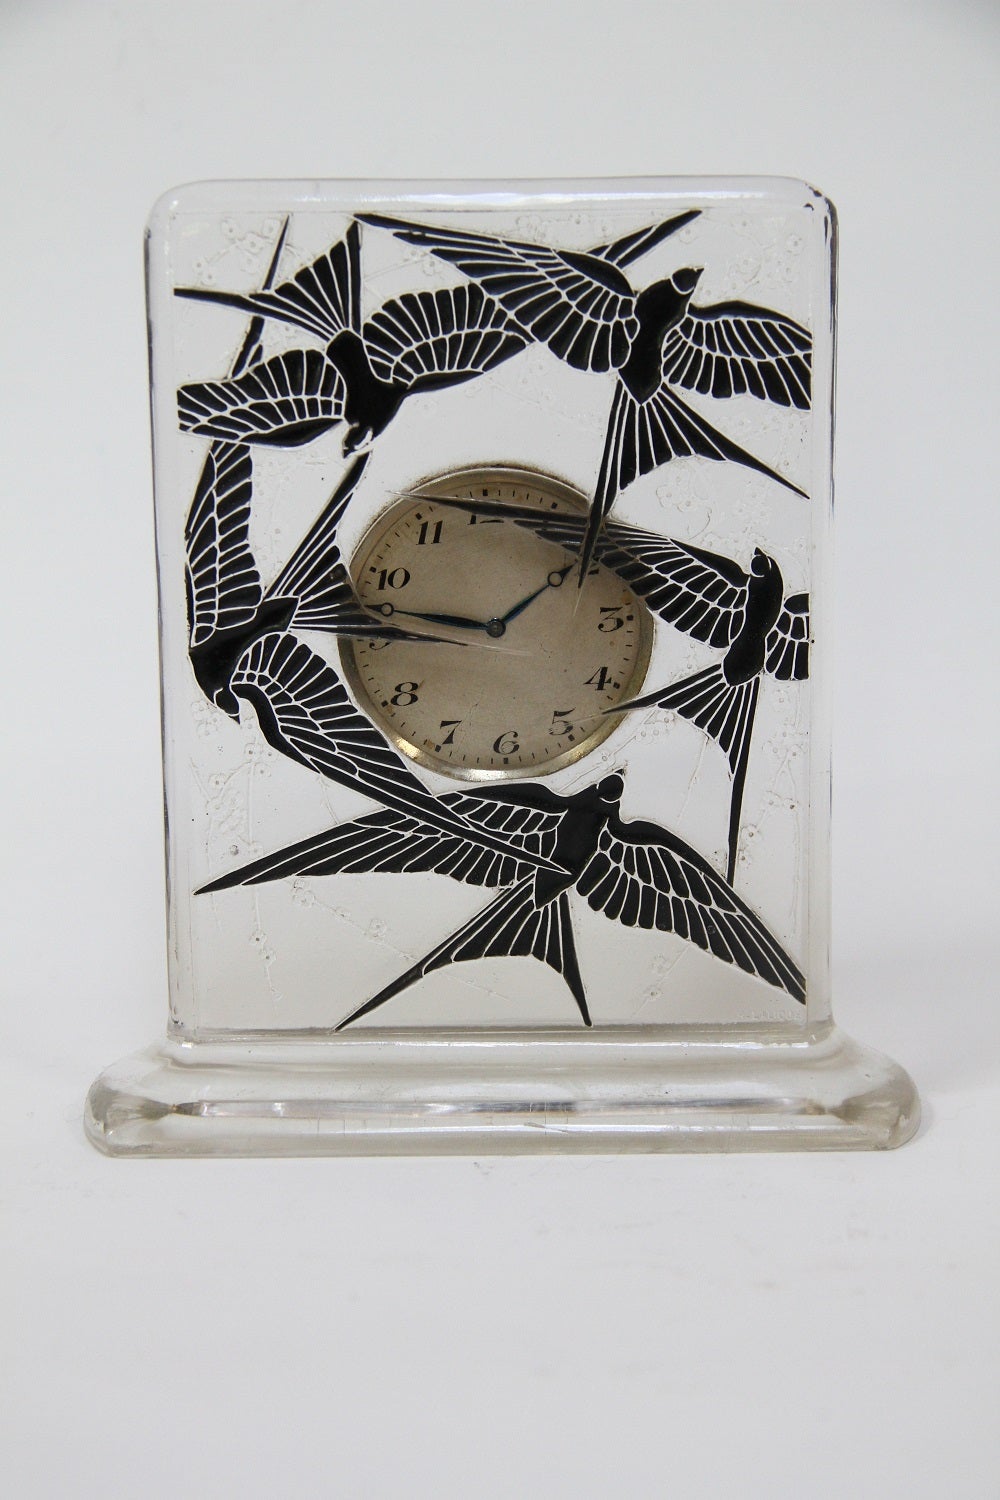 Rene Lalique Pendulette 8 jours Cinq Hirondelles glass clock with black enamel in working condition
dite aussi pendulette - Vol d'hirondelles.
modele cree en, 1920.
Verre blanc moule-presse emaile (moule n 1317)
haut. 15 cm
figure aux